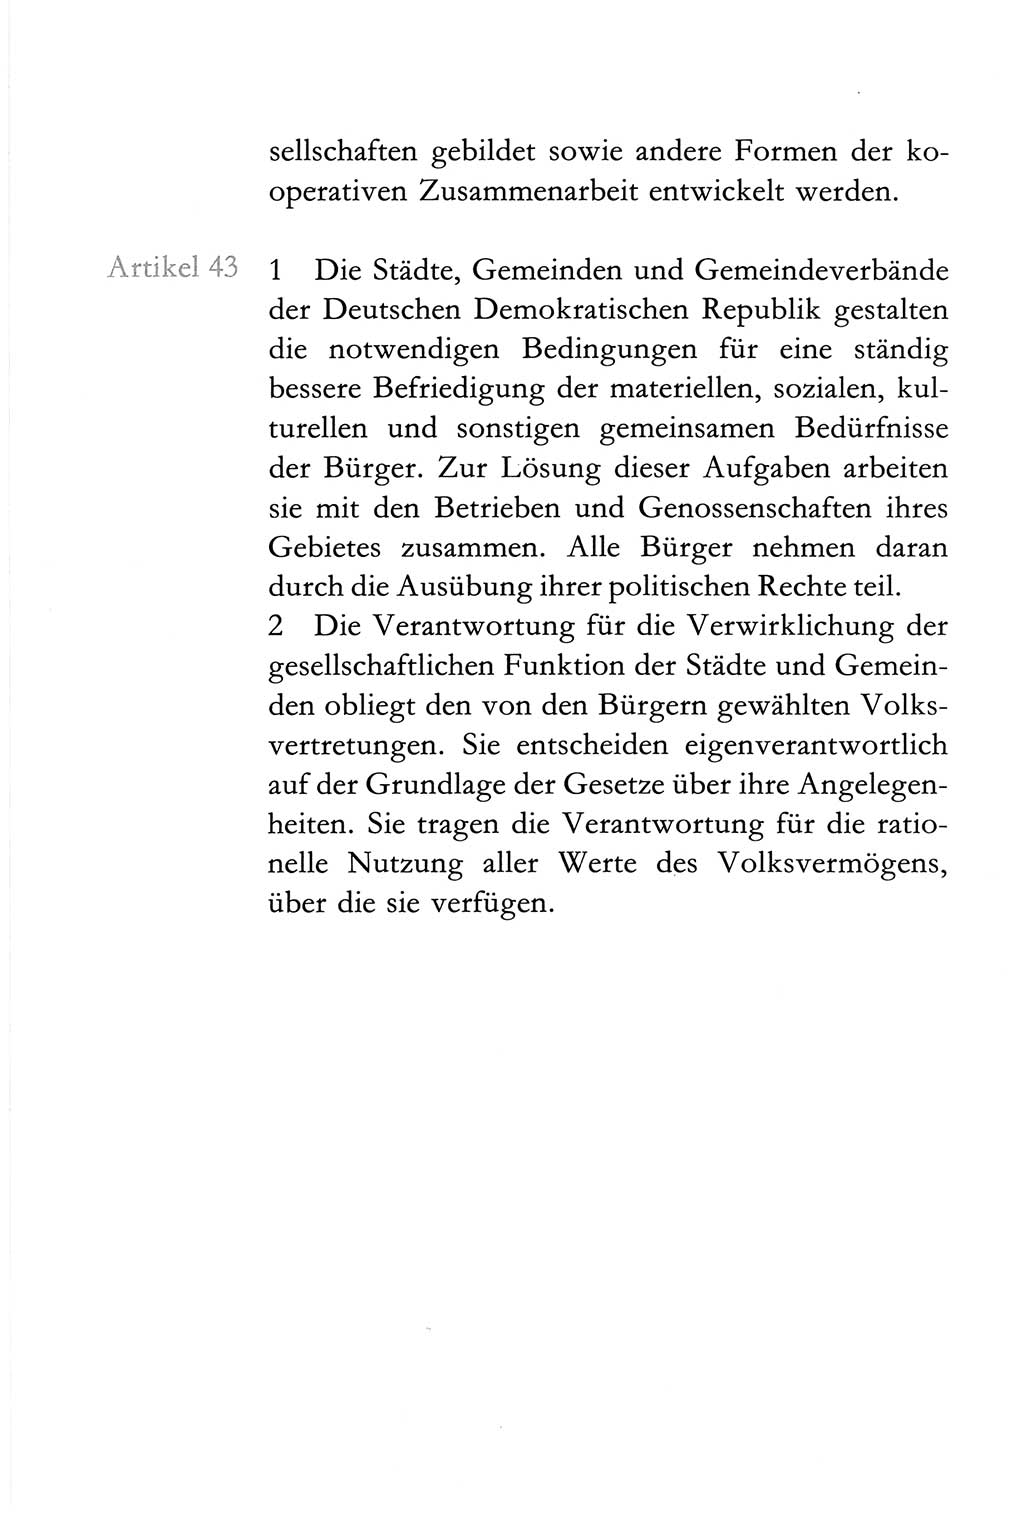 Verfassung der Deutschen Demokratischen Republik (DDR) vom 6. April 1968, Seite 40 (Verf. DDR 1968, S. 40)